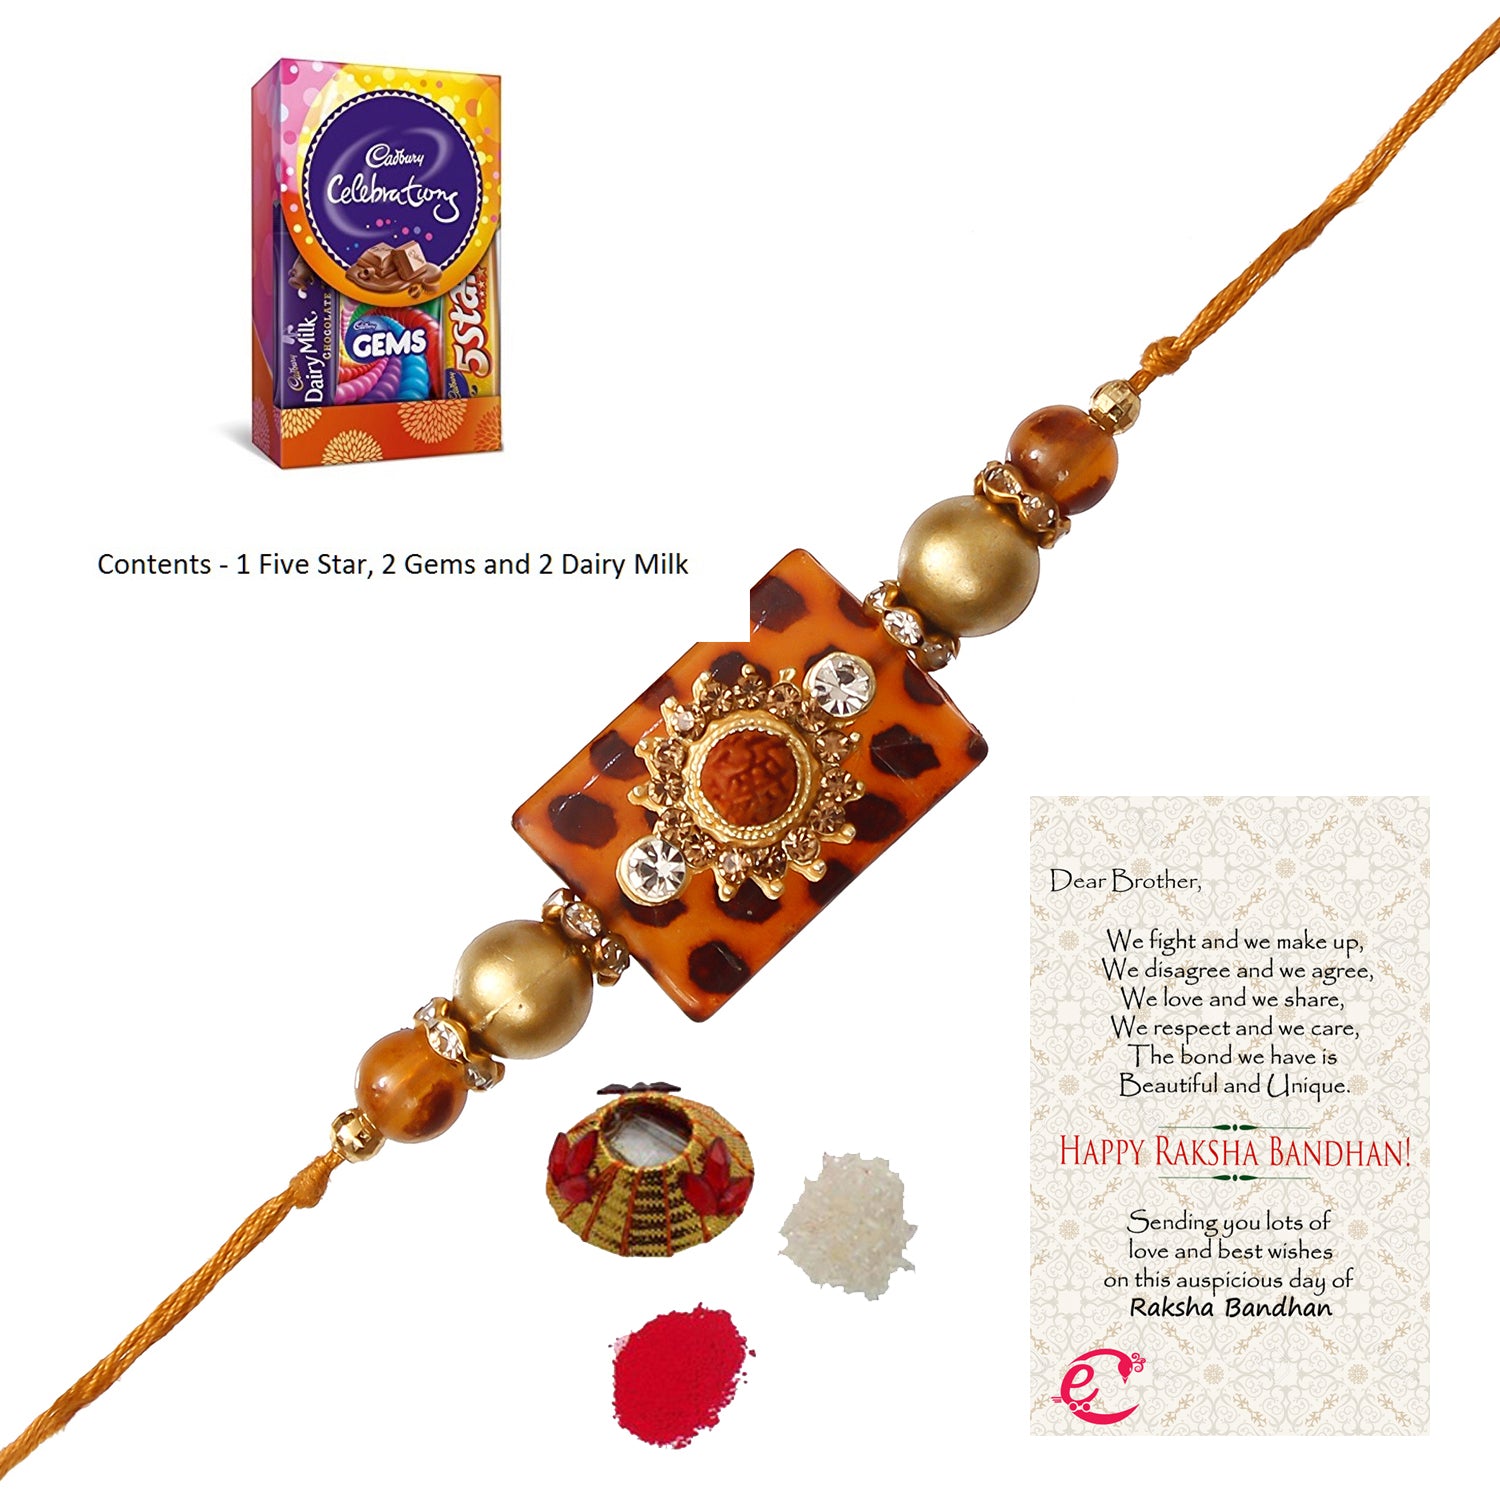 Stone Rudraksh Rakhi with Cadbury Celebrations Gift Pack of 5 Assorted Chocolates and Roli Tikka Matki, Best Wishes Greeting Card